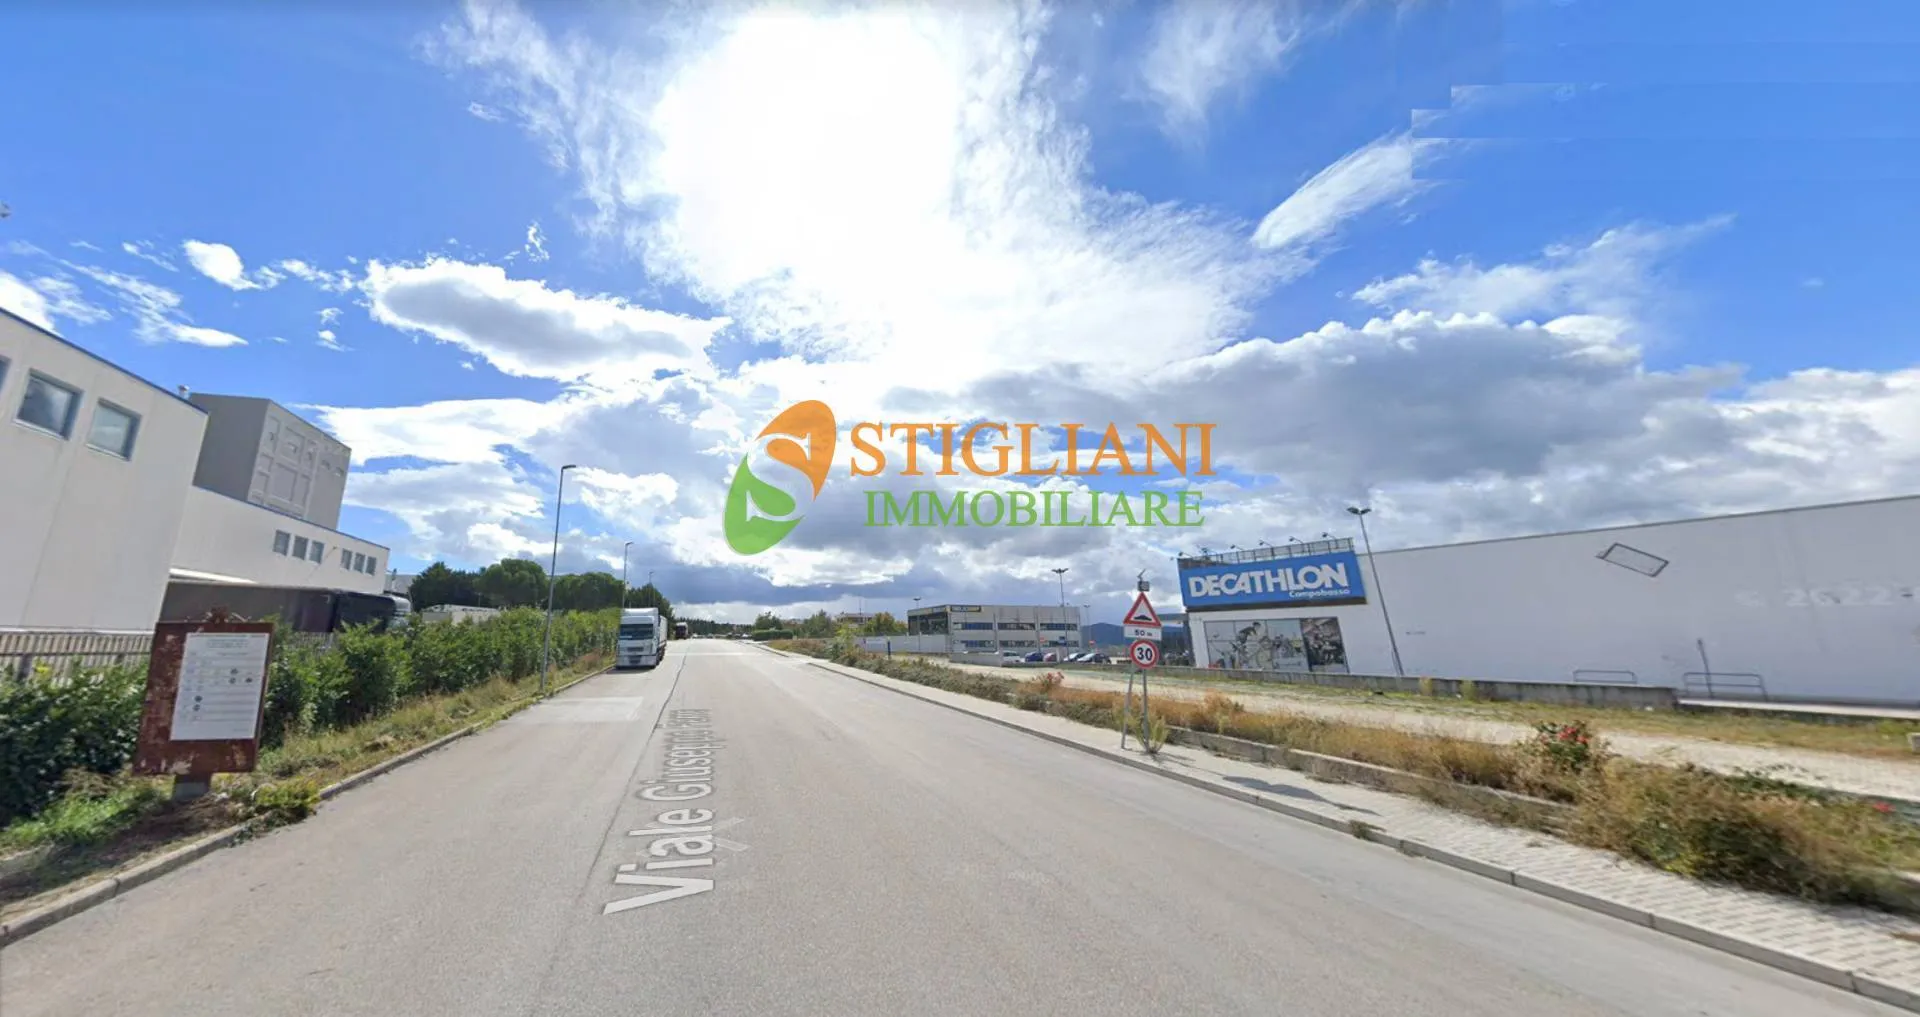 Immagine per Locale Commerciale in vendita a Campobasso Zona industriale